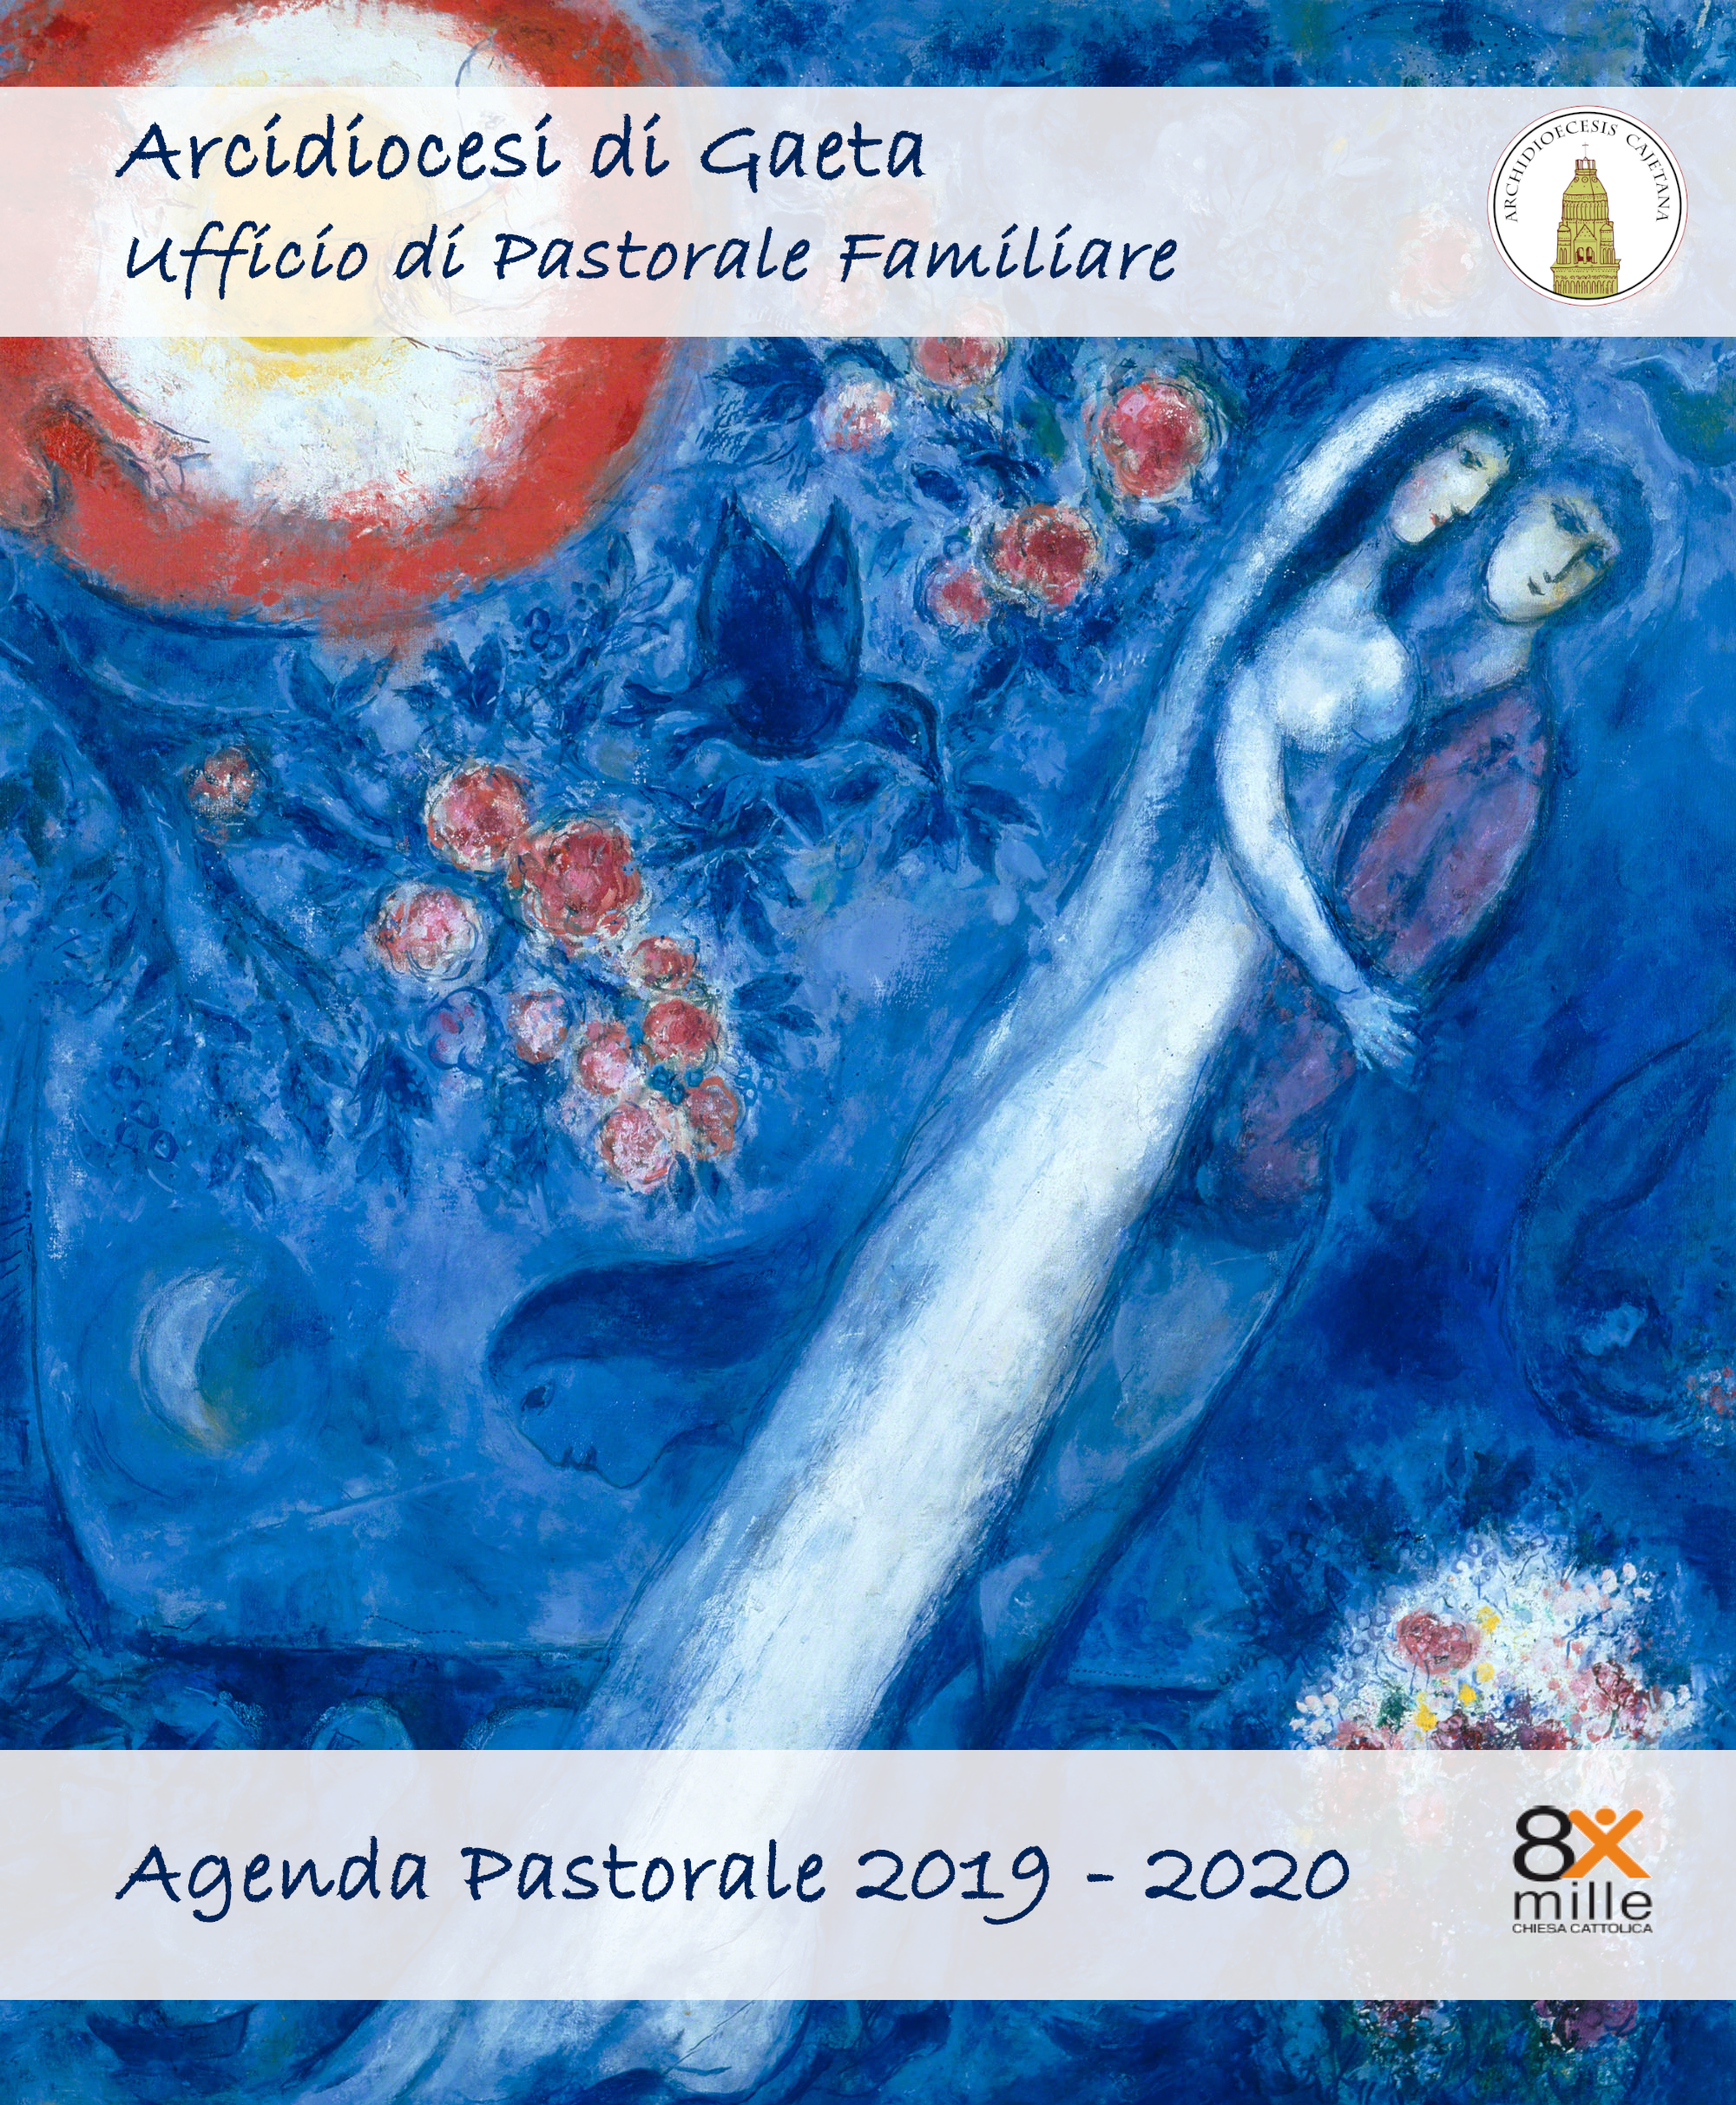 Agenda Pastorale 2019/2020